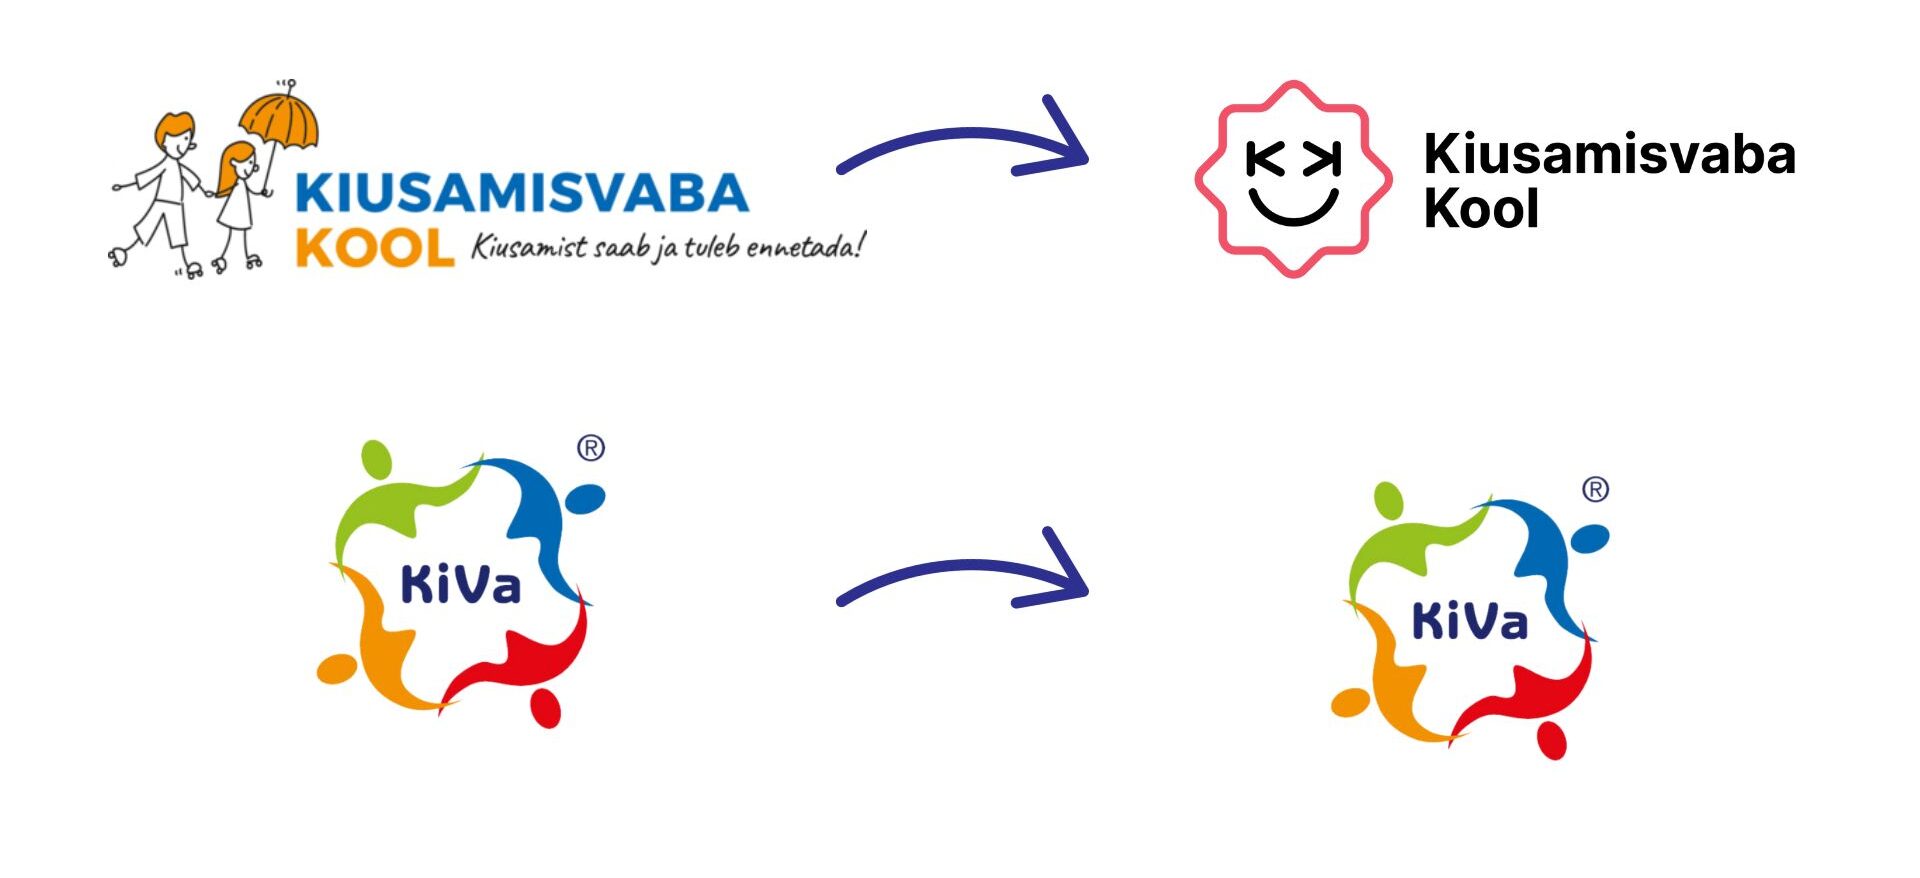 Что за путаница с этими логотипами или как правильно использовать логотипы KiVa и Kiusamisvaba Kool?